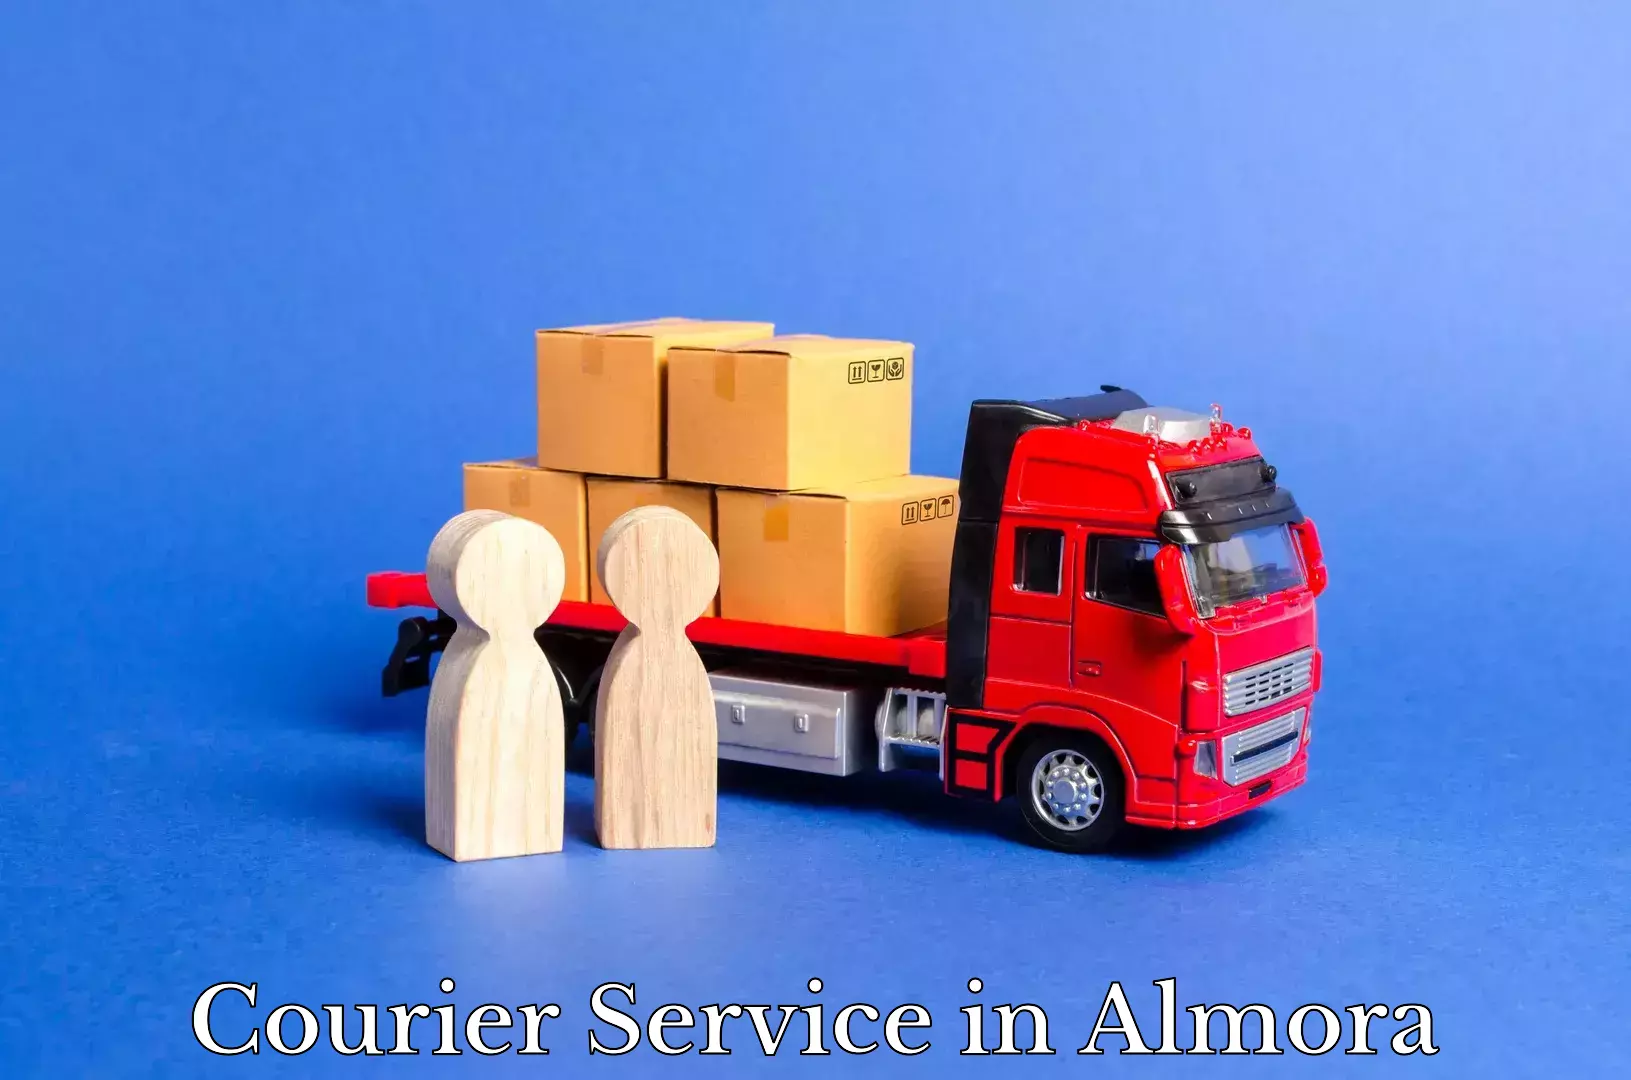 Bulk shipment in Almora